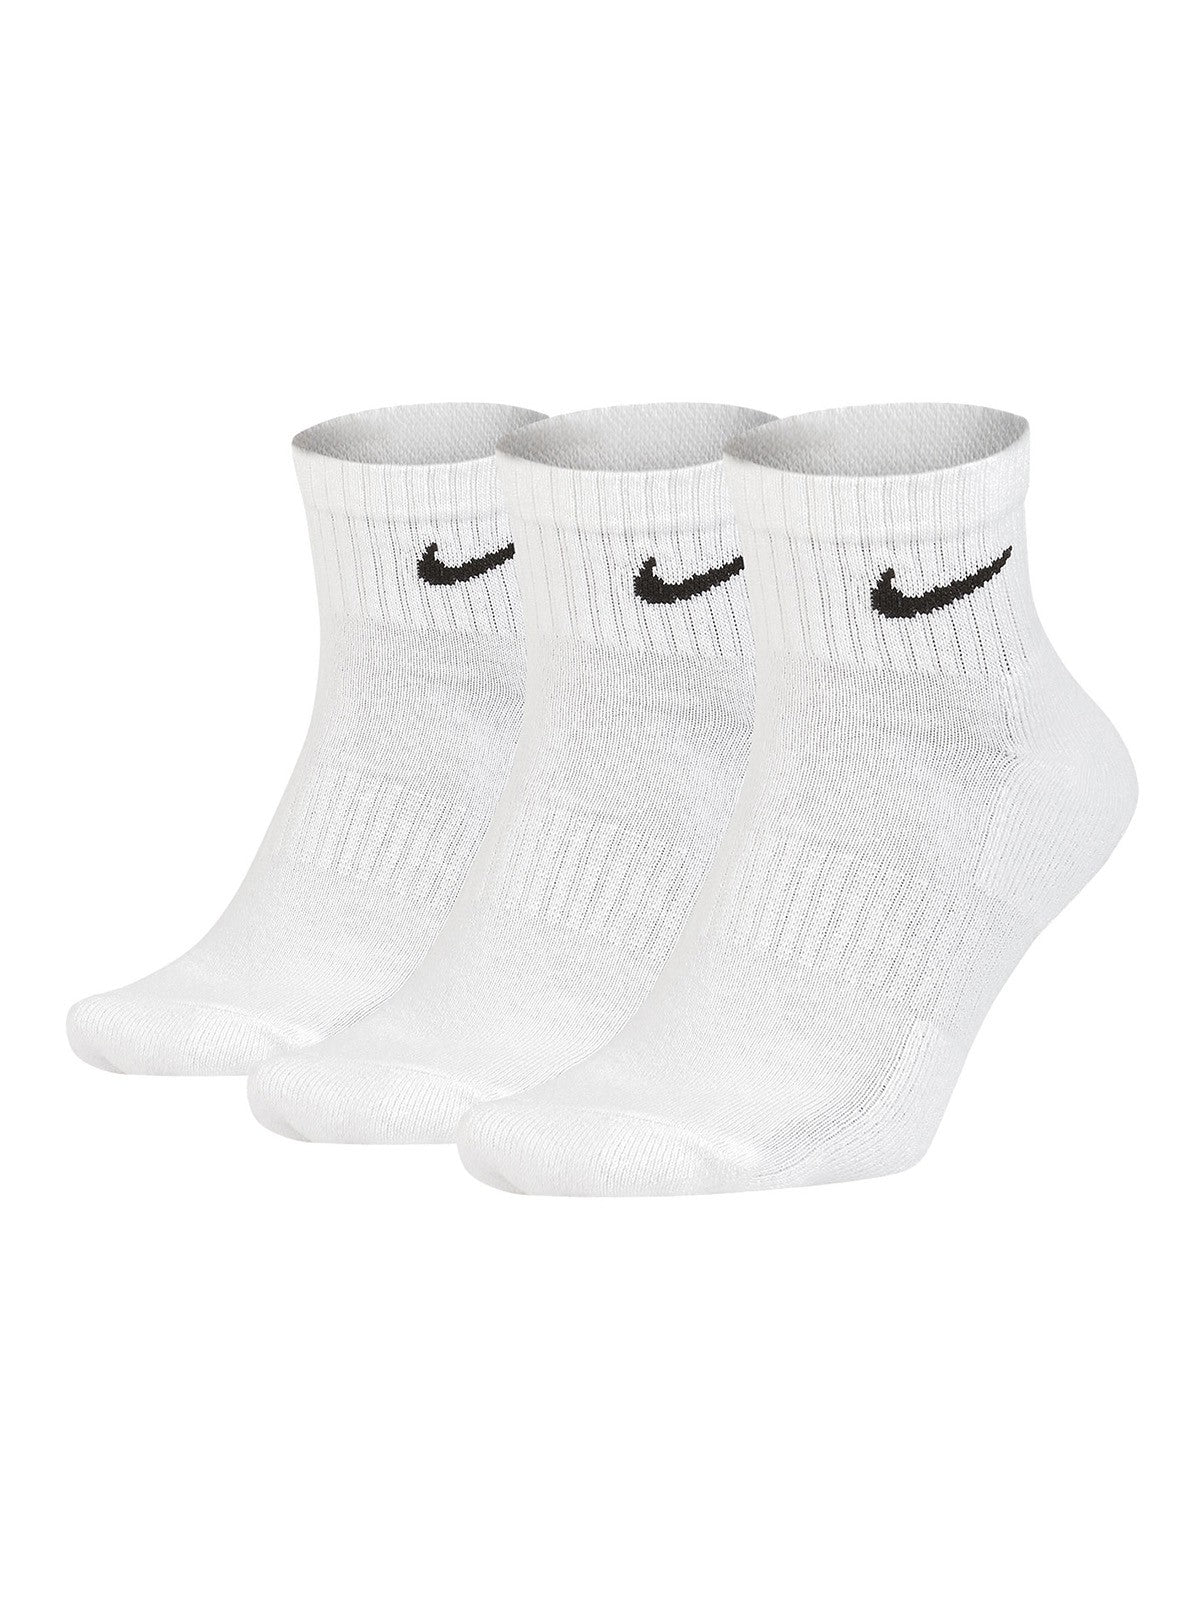 Calze Unisex Nike - Everyday Cushion Ankle Socks - 3 Pack - Bianco